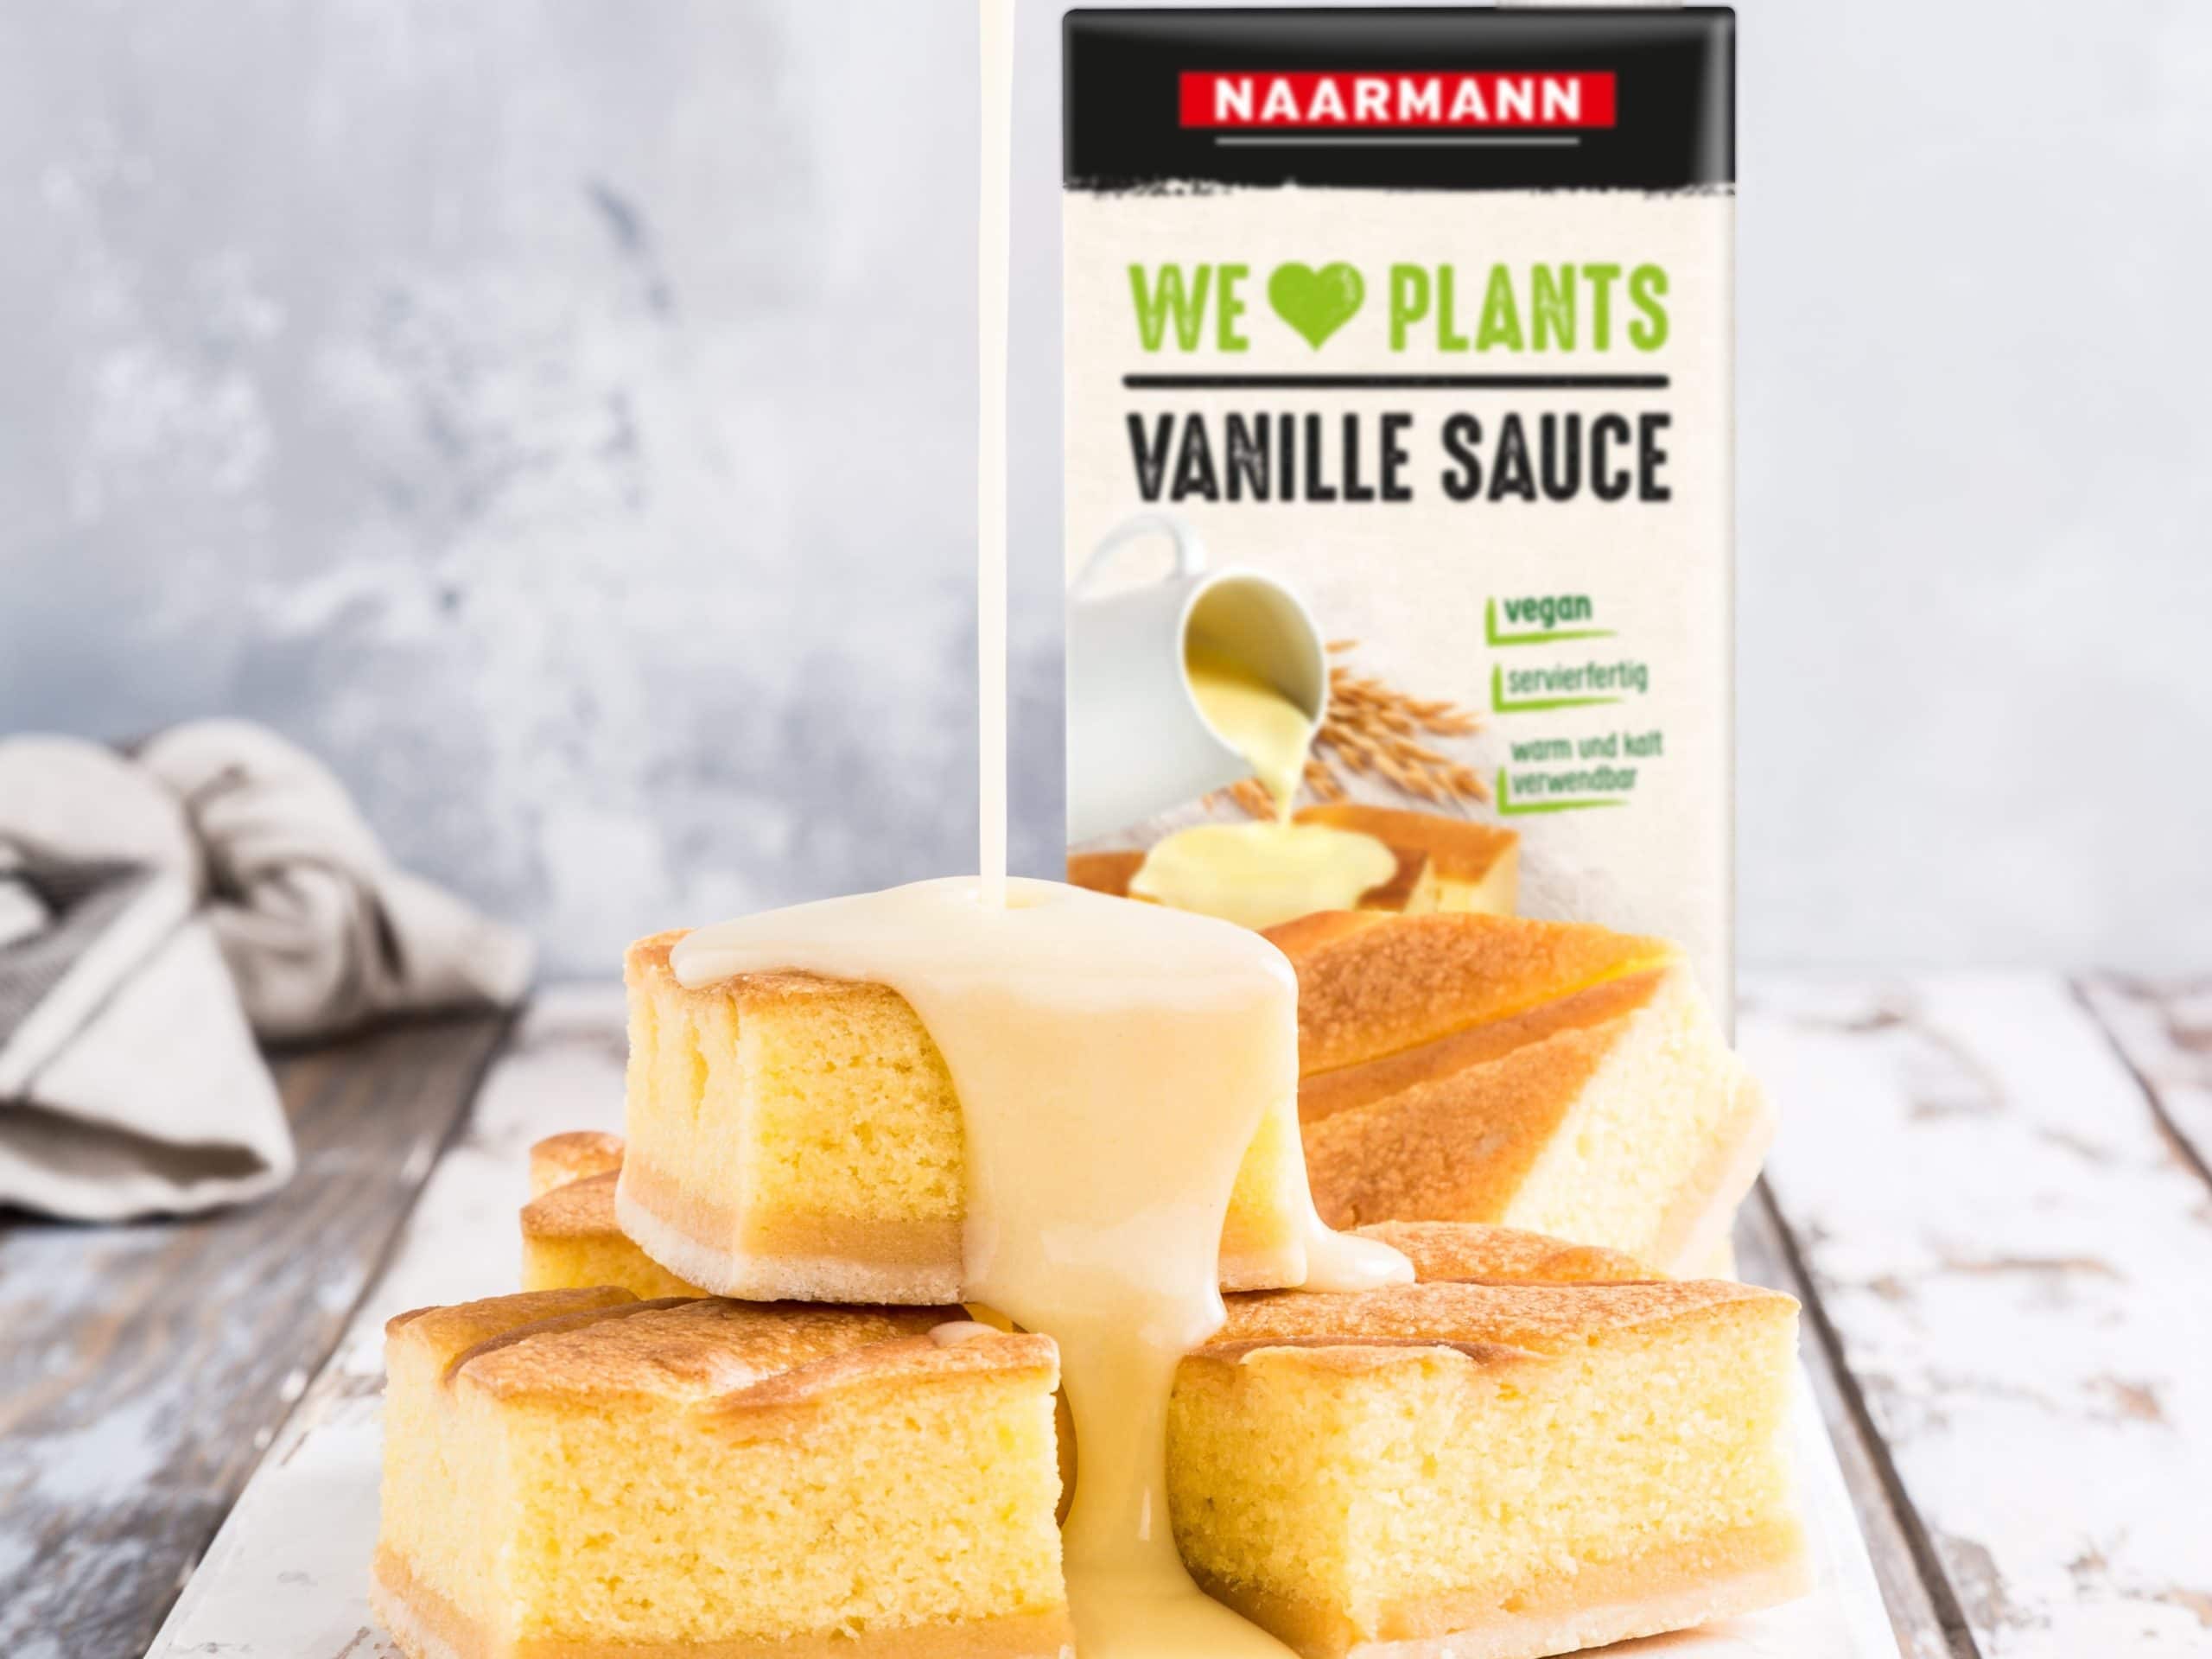 Mit diesem neuen Produkt bietet Naarmann den Gastronomen die ideale Ergänzung für ihre veganen Desserts. Die WE ♥ PLANTS Vanille Sauce rundet das bestehende, vegane Dessertsortiment der Privatmolkerei Naarmann hervorragend ab.